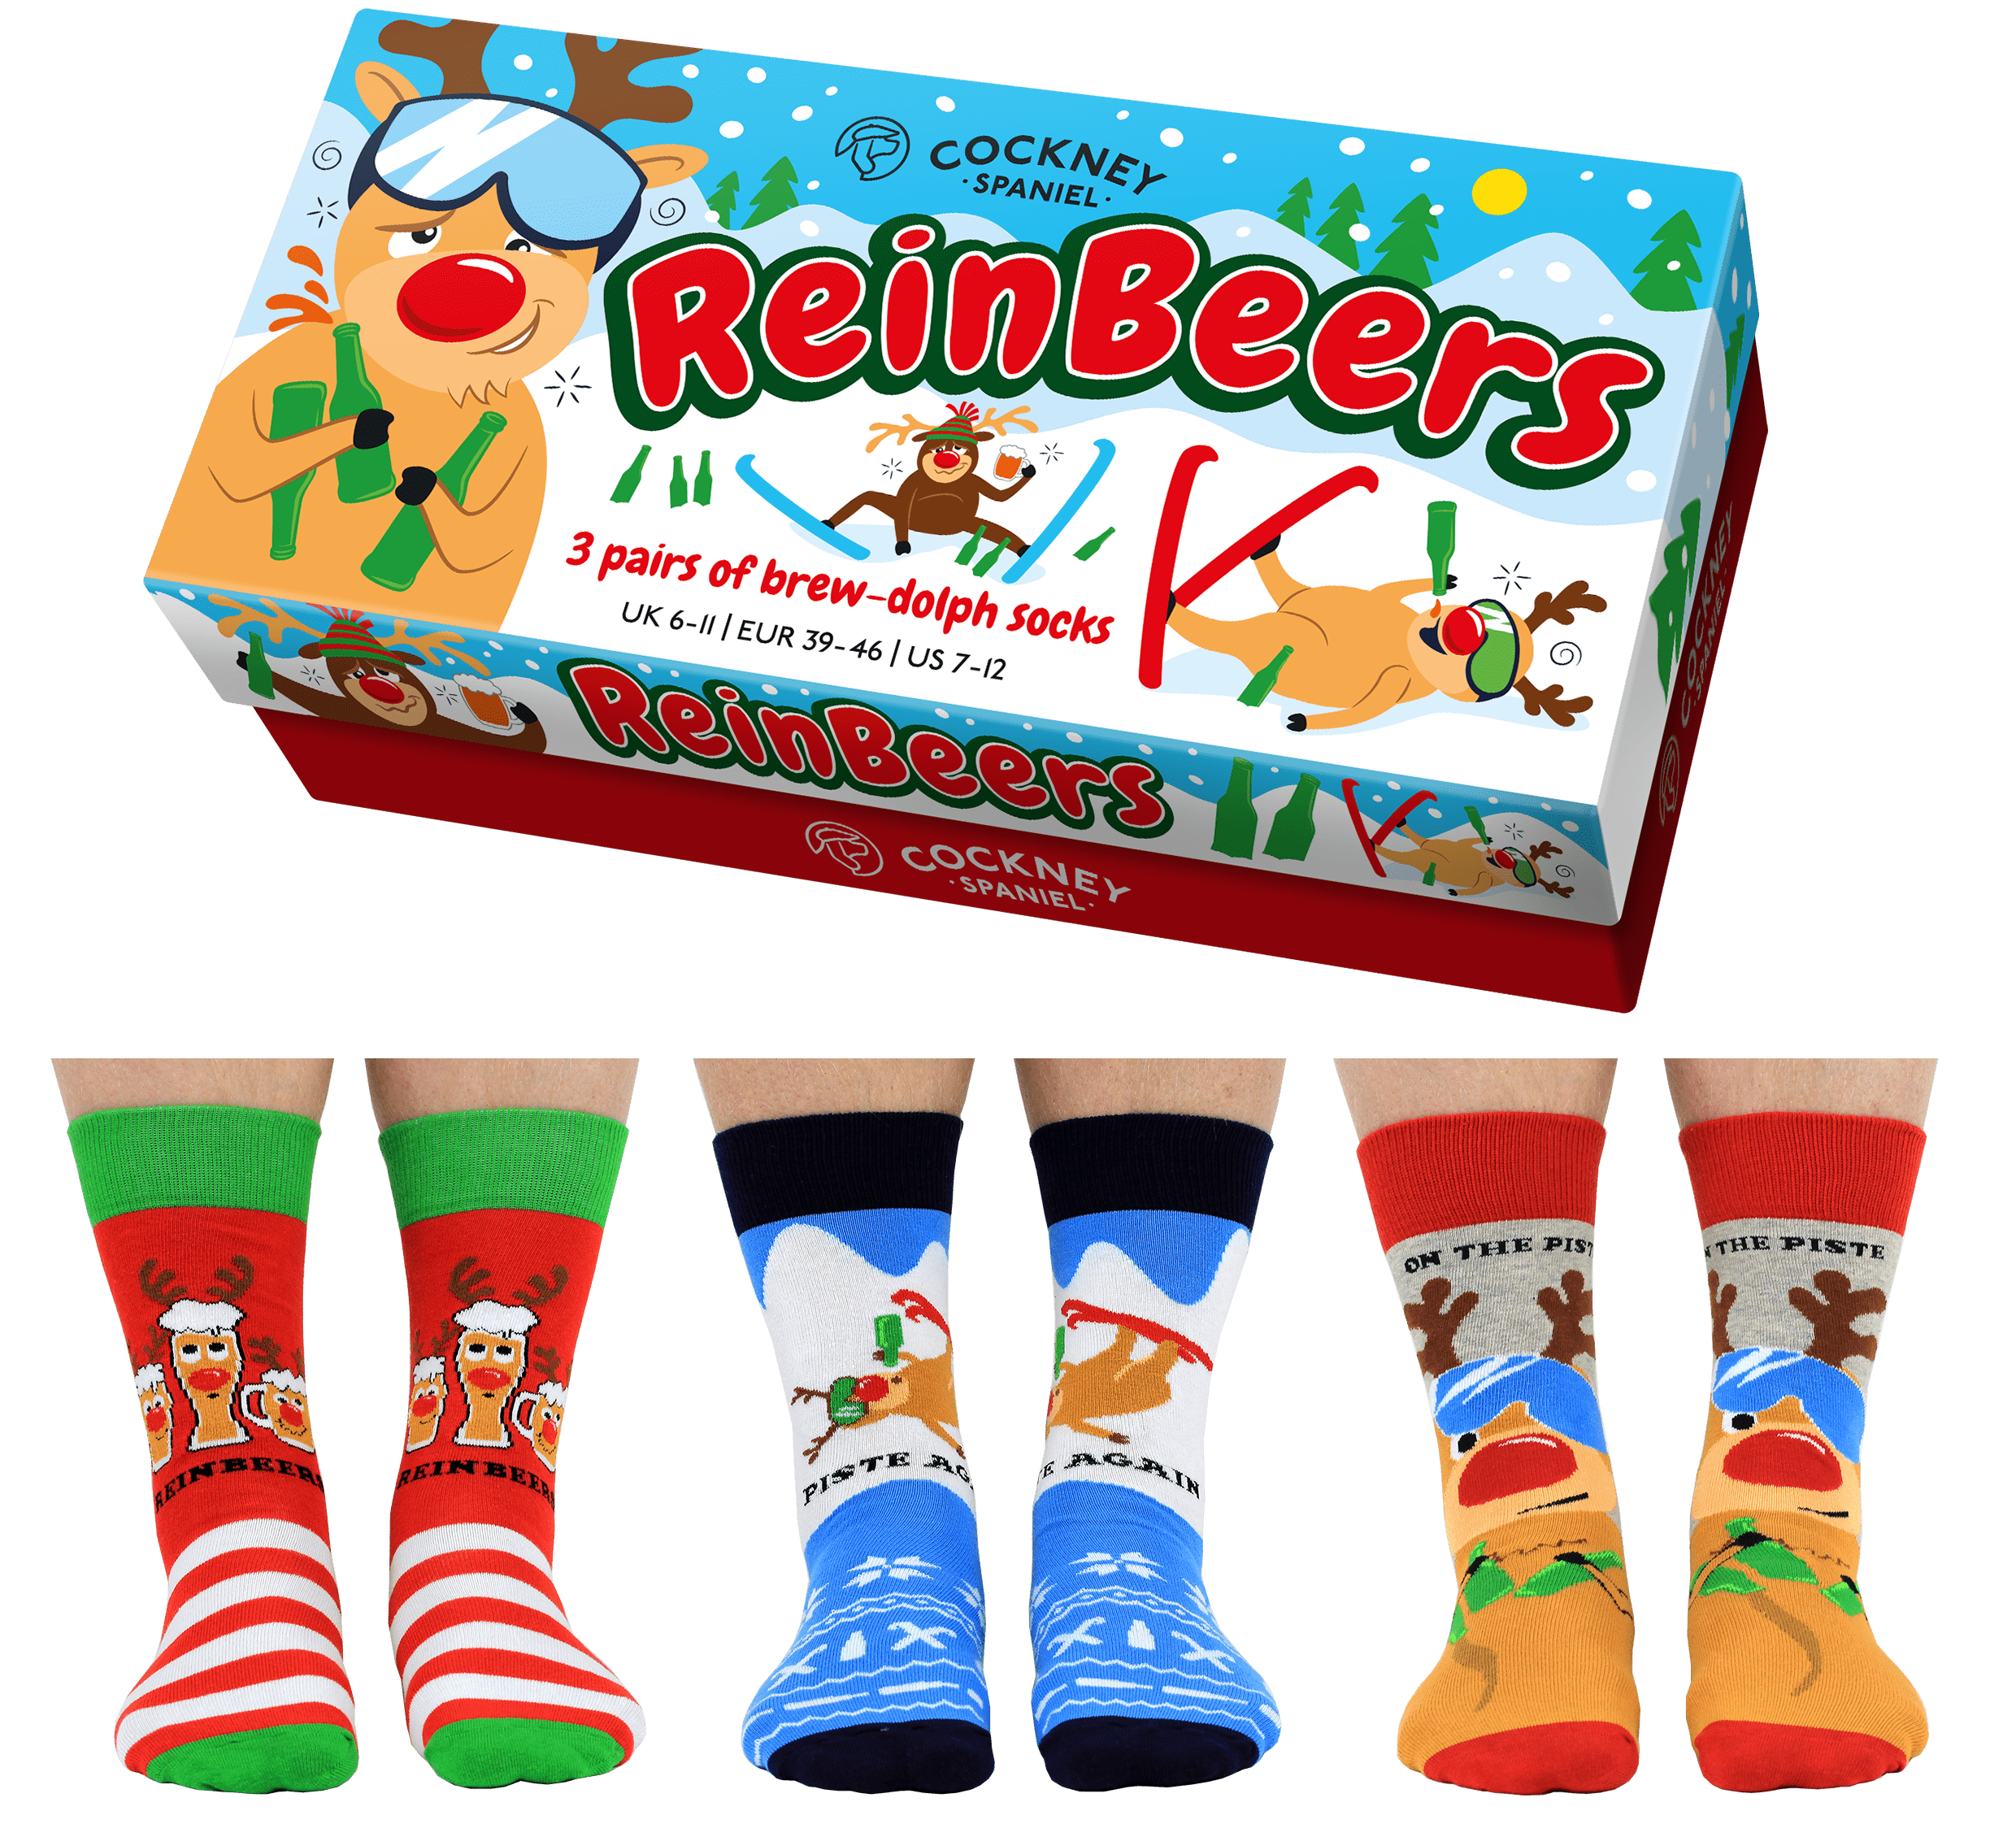 Cockney Spaniel ReinBeers Christmas Boxed Socks